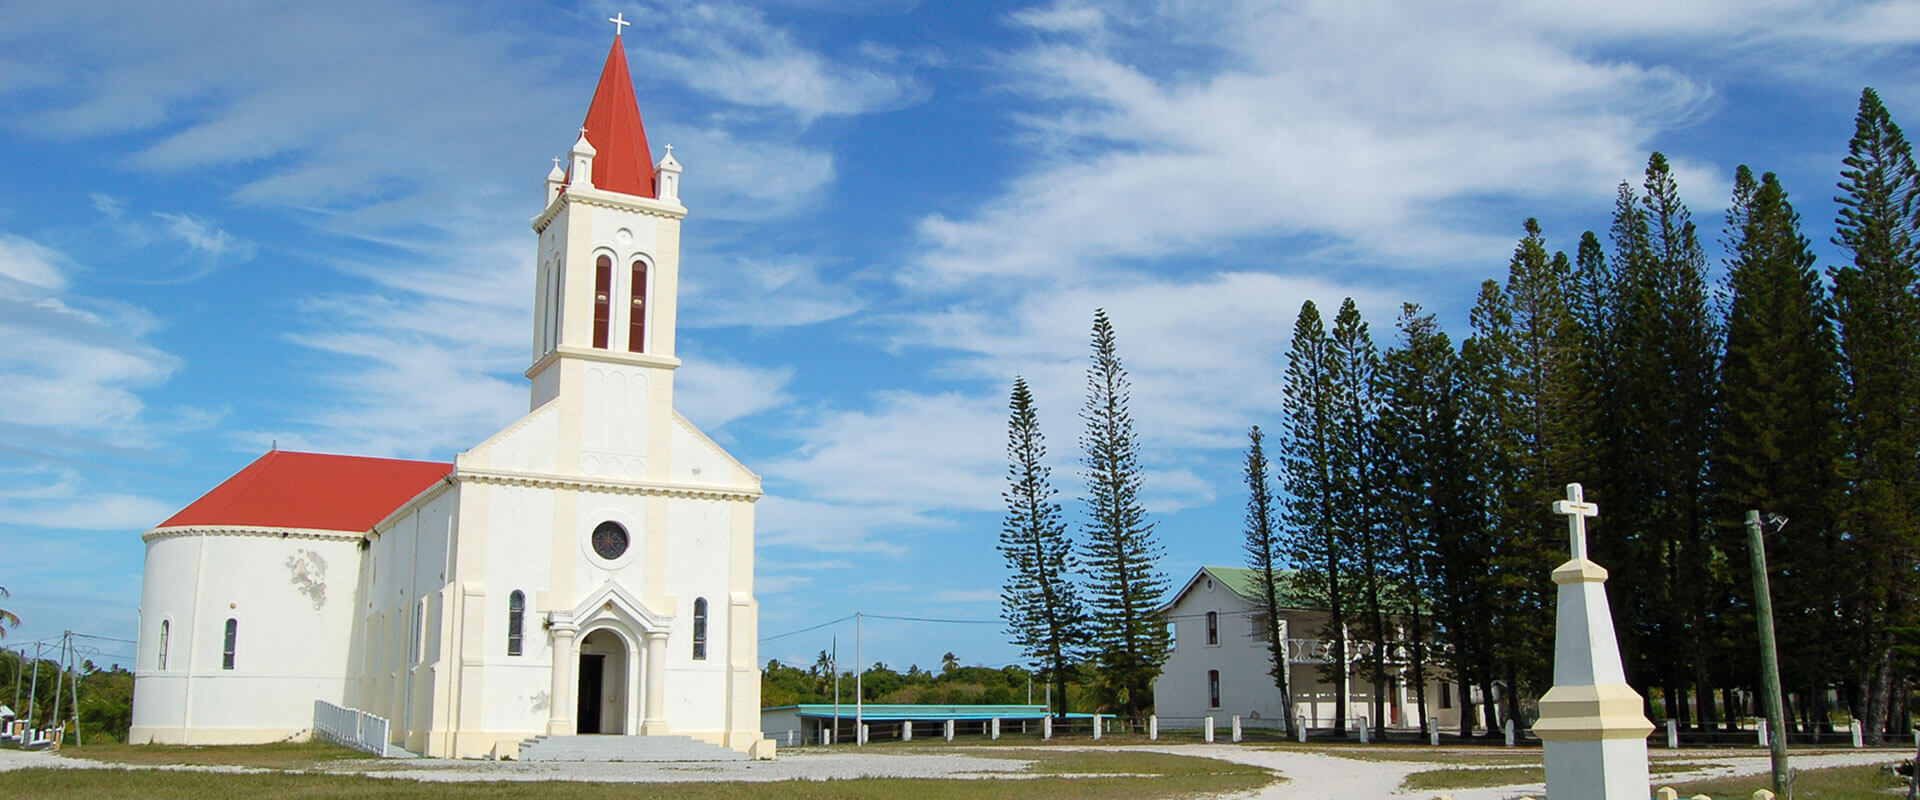 L’église Saint-Joseph